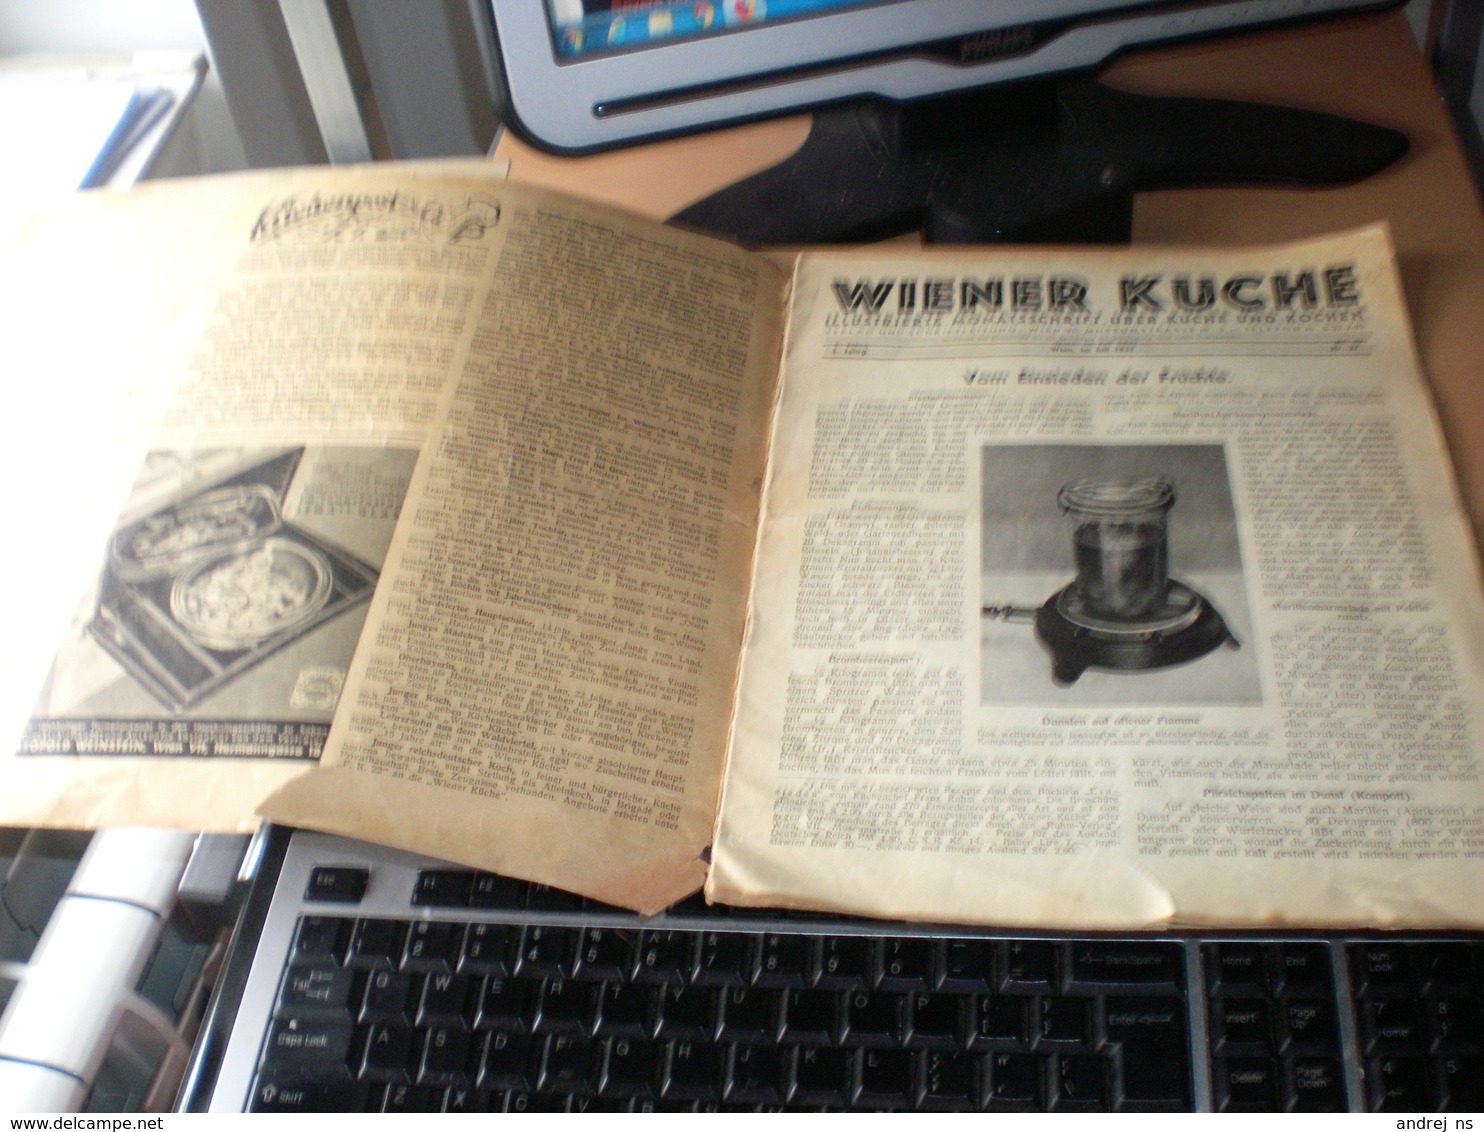 Wiener Kuche Herausgegeben Von Kuchenchef Franz Ruhm Nr 57 Wien 1935 24 Pages - Essen & Trinken